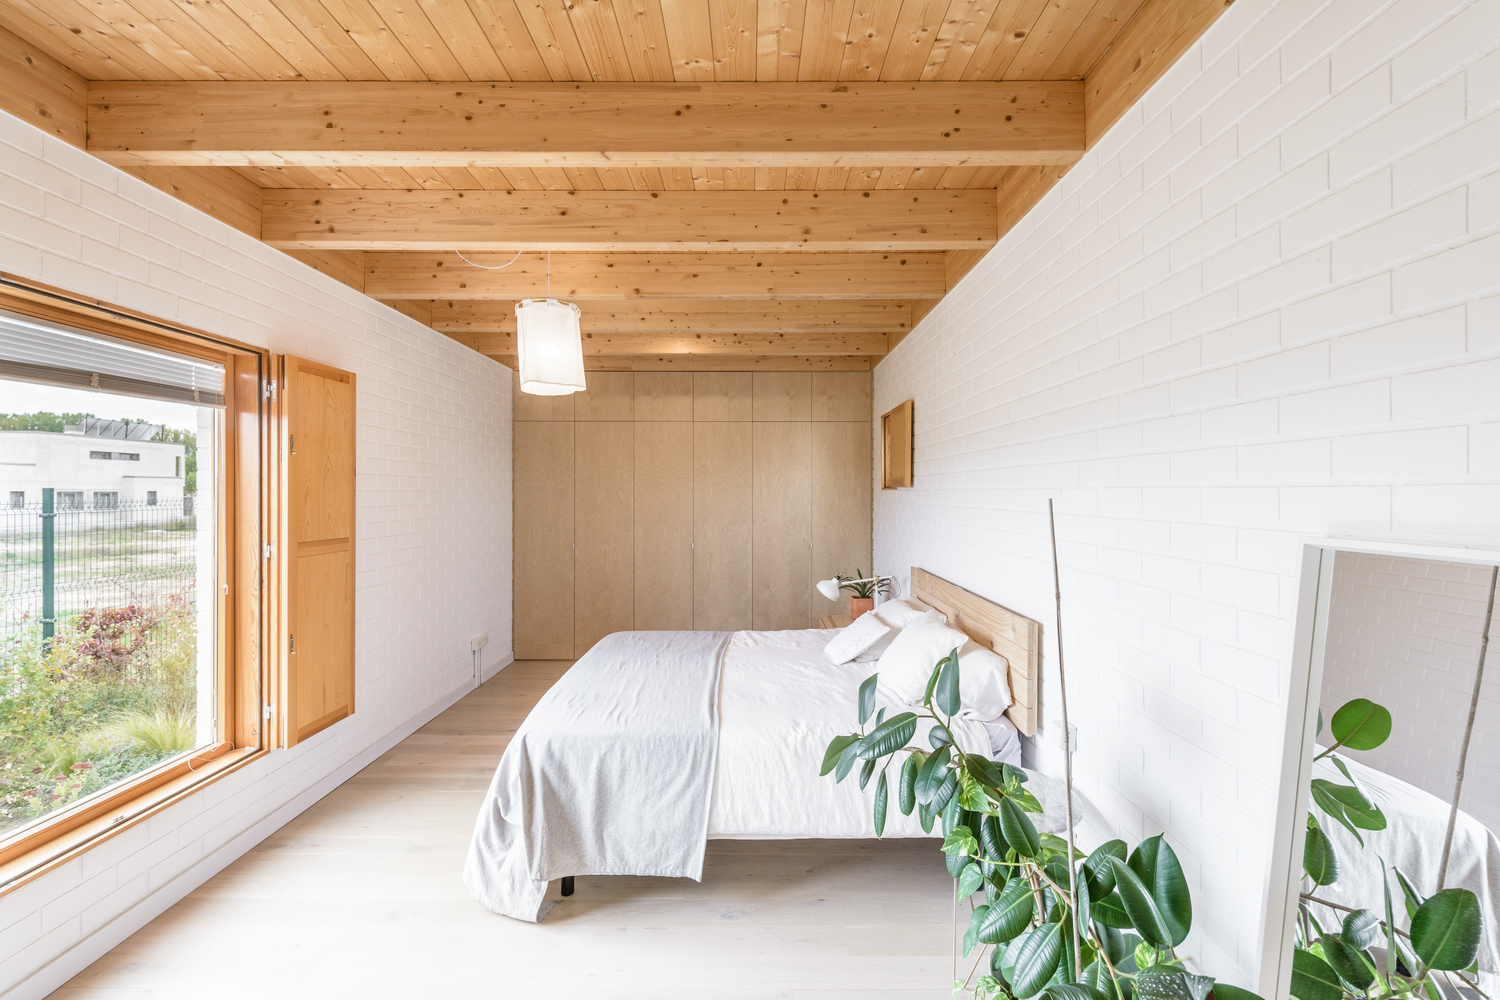 Hình ảnh toàn cảnh phòng ngủ với hai lớp cửa sổ kính, gỗ